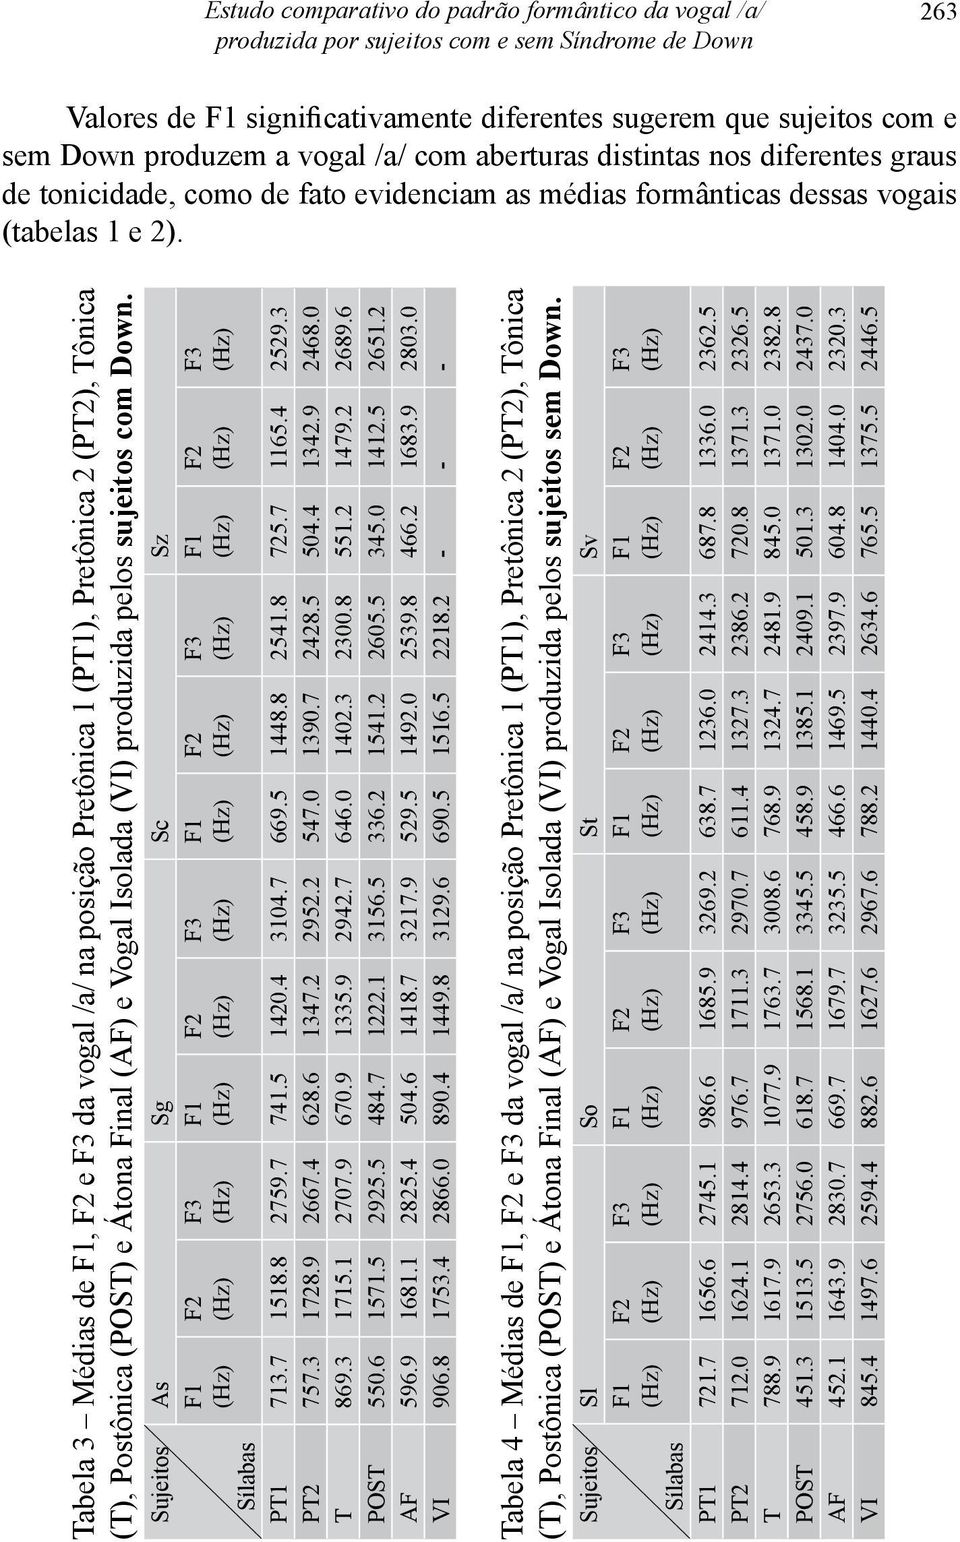 Tabela 3 Médias de, e da vogal /a/ na posição Pretônica 1 (PT1), Pretônica 2 (PT2), Tônica (T), Postônica (POST) e Átona Final (AF) e Vogal Isolada (VI) produzida pelos sujeitos com Down.